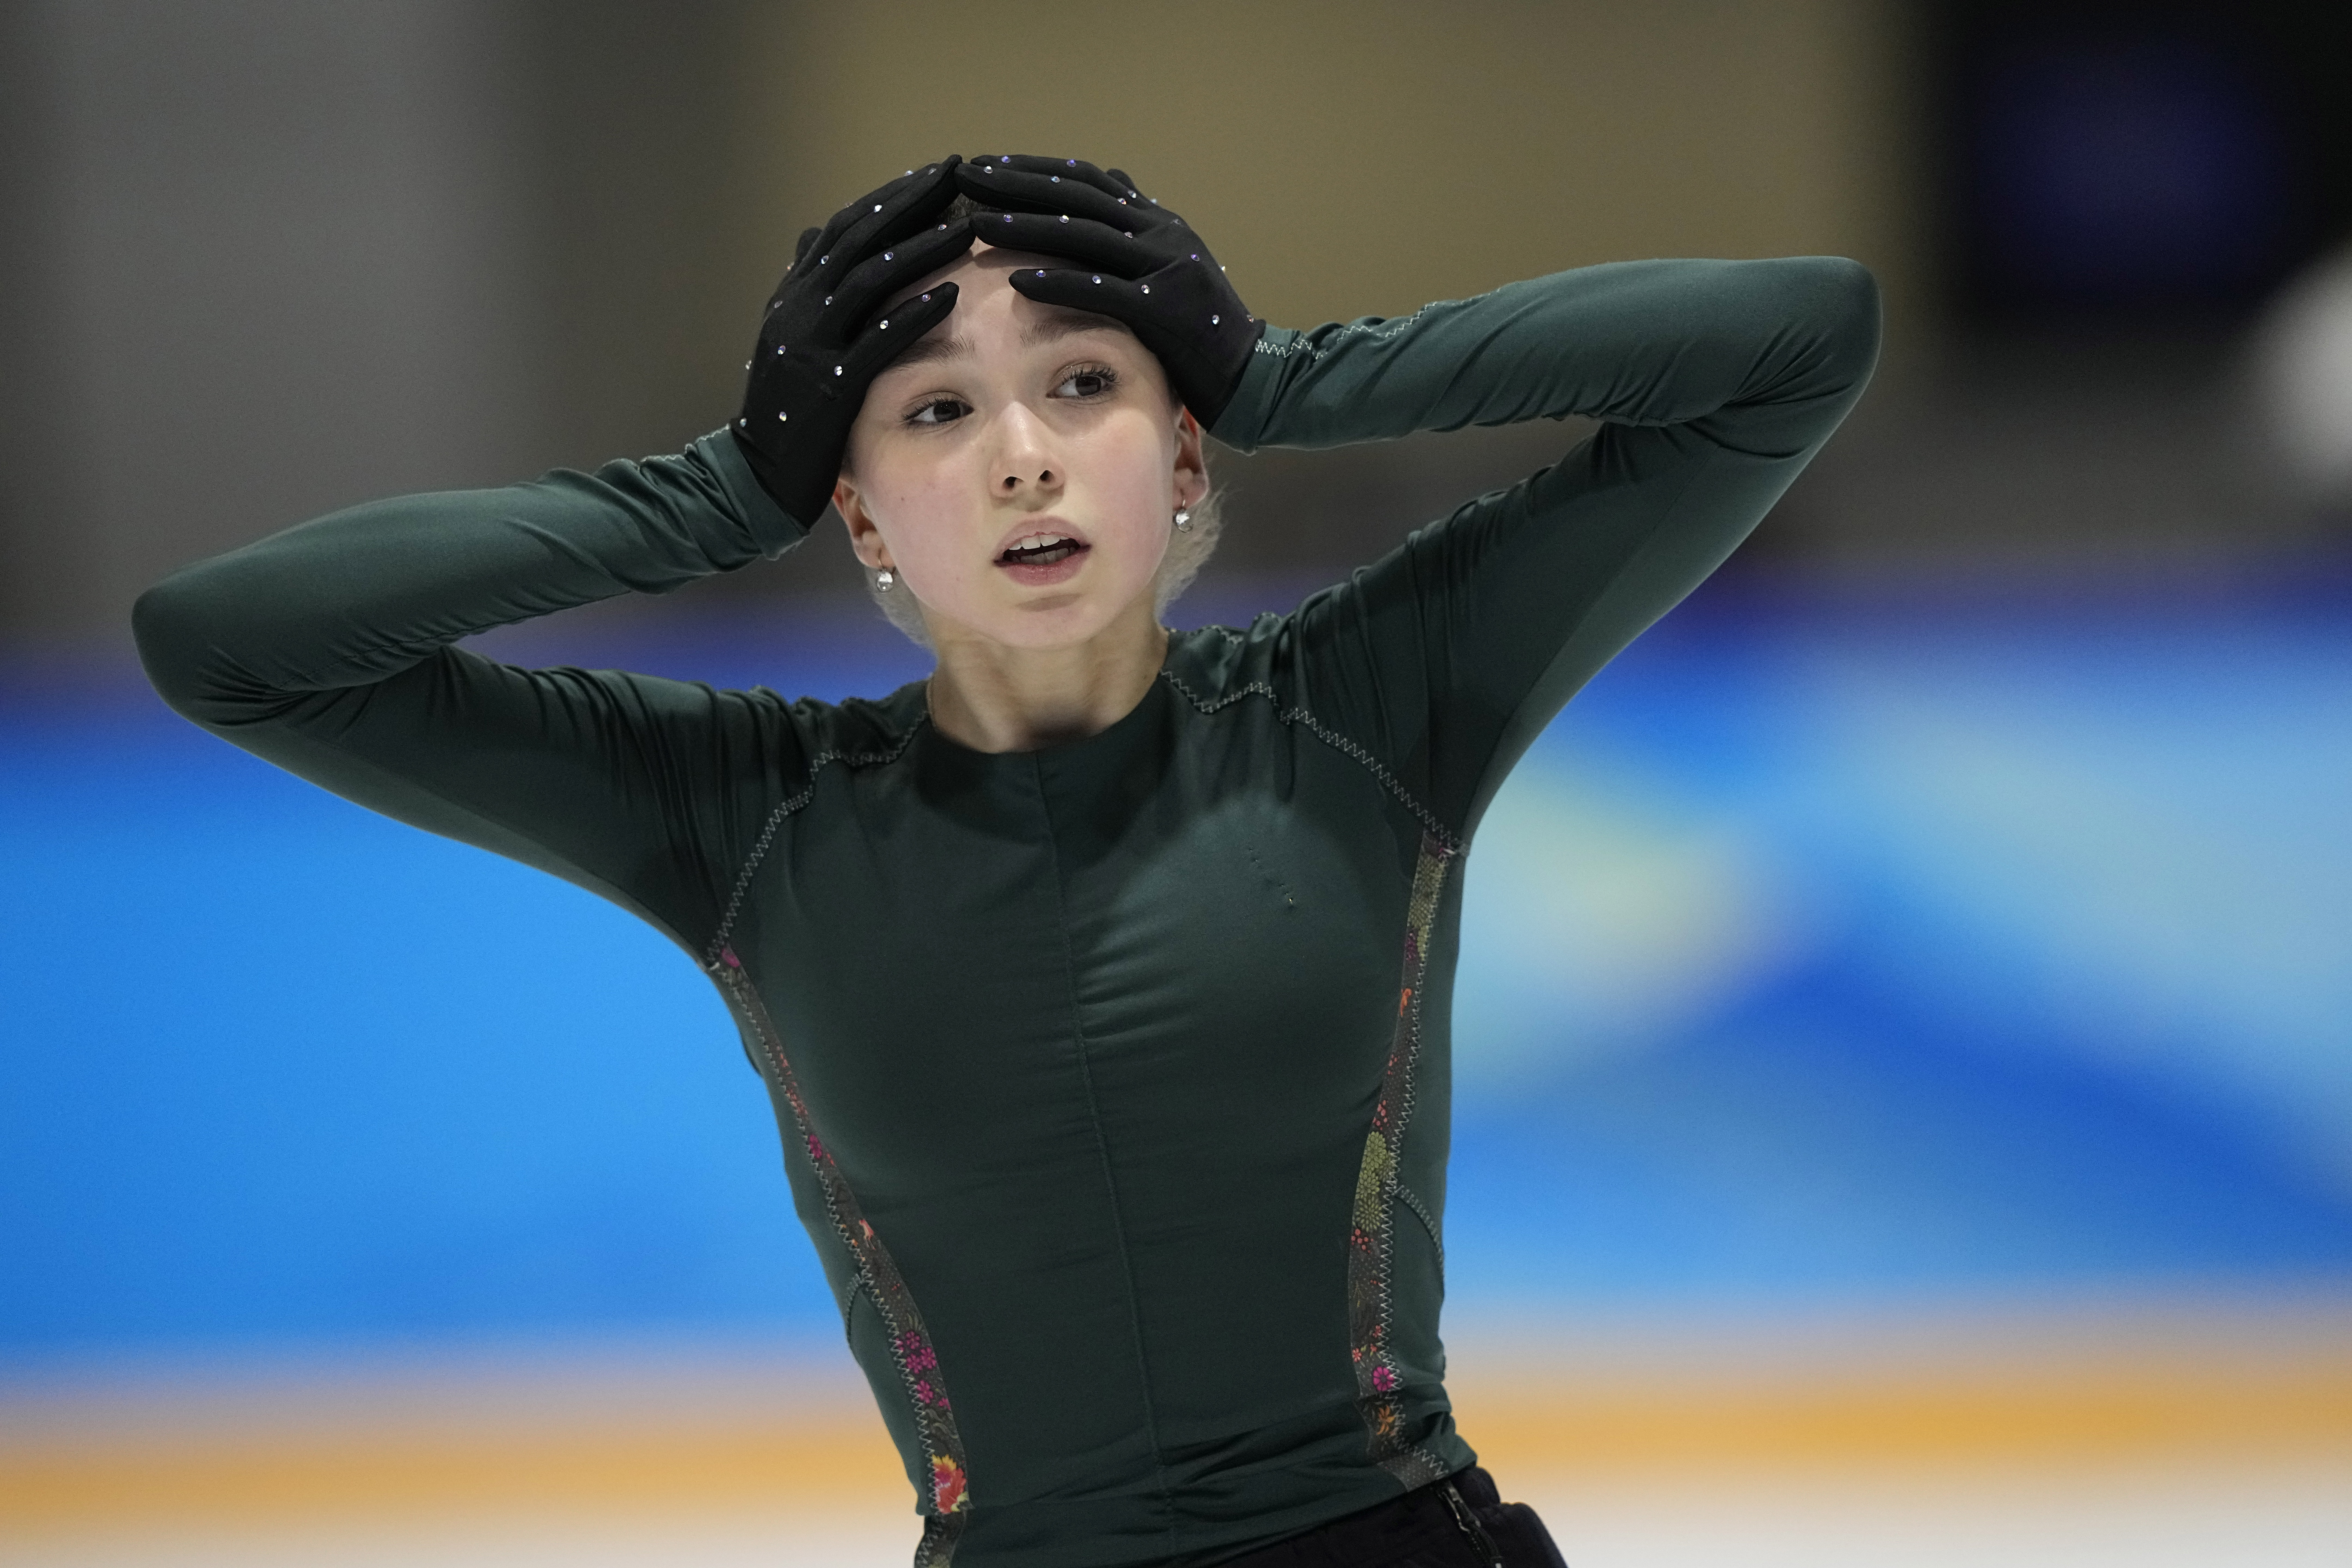 Камила Валиева на тренировке. 13 февраля 2022 года. Пекин.
Фото David J. Phillip/AP/Scanpix /Leta